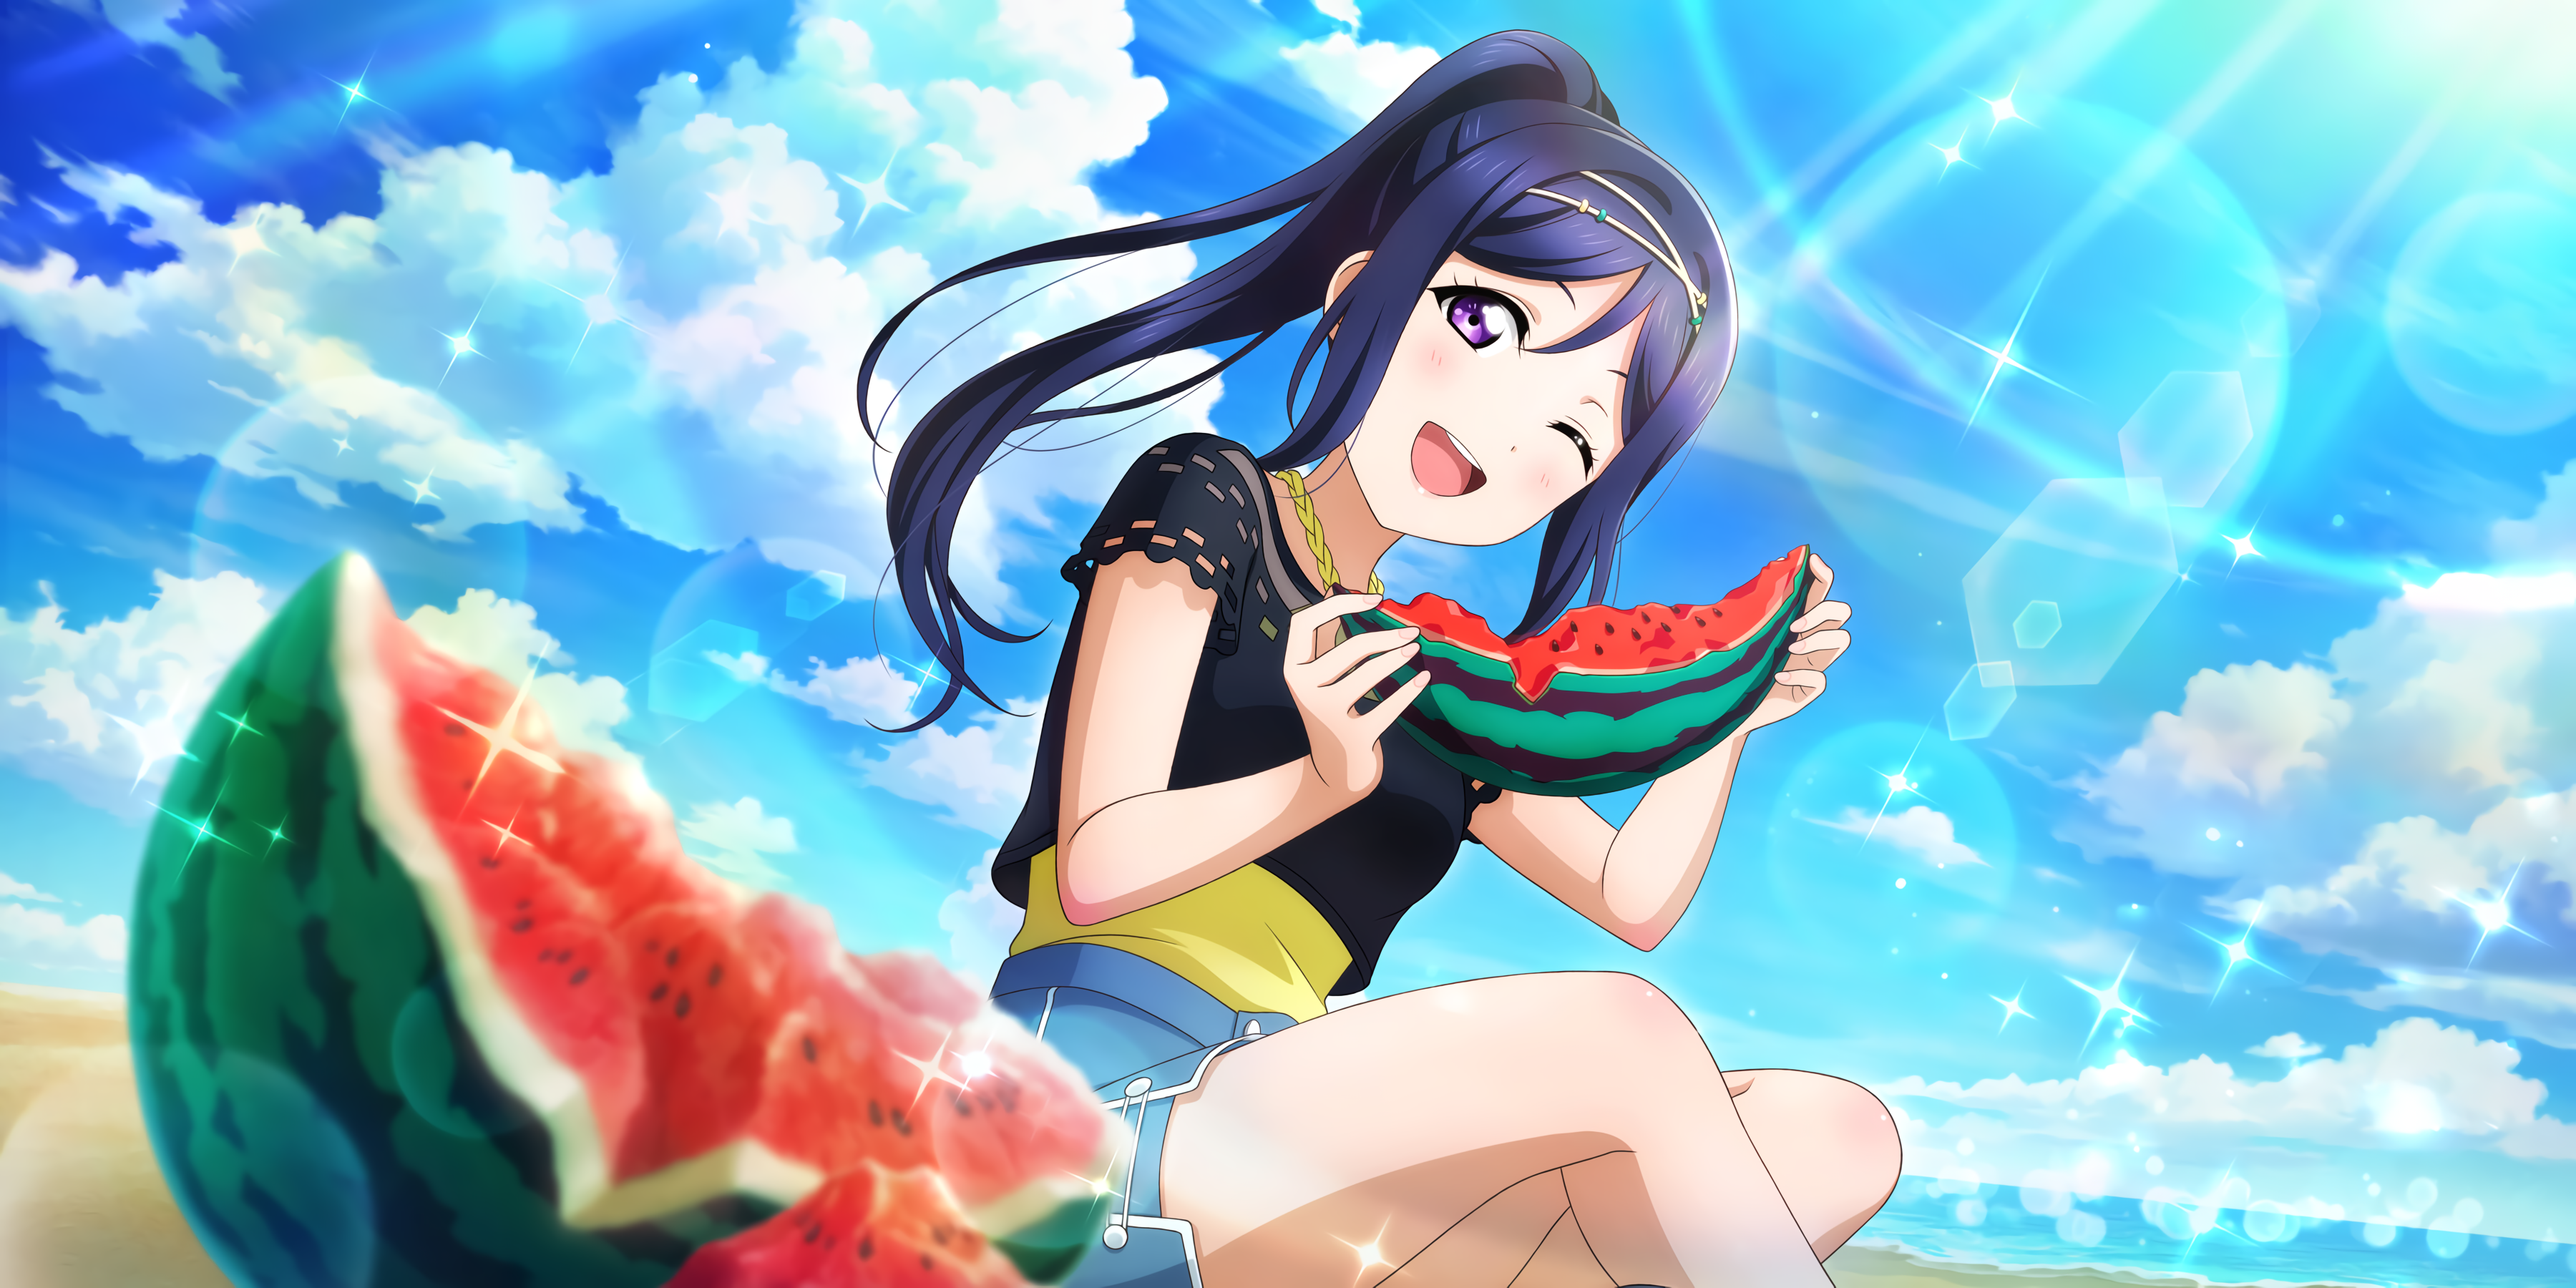 Anime 3600x1800 Matsuura Kanan Love Live! Sunshine anime girls watermelons